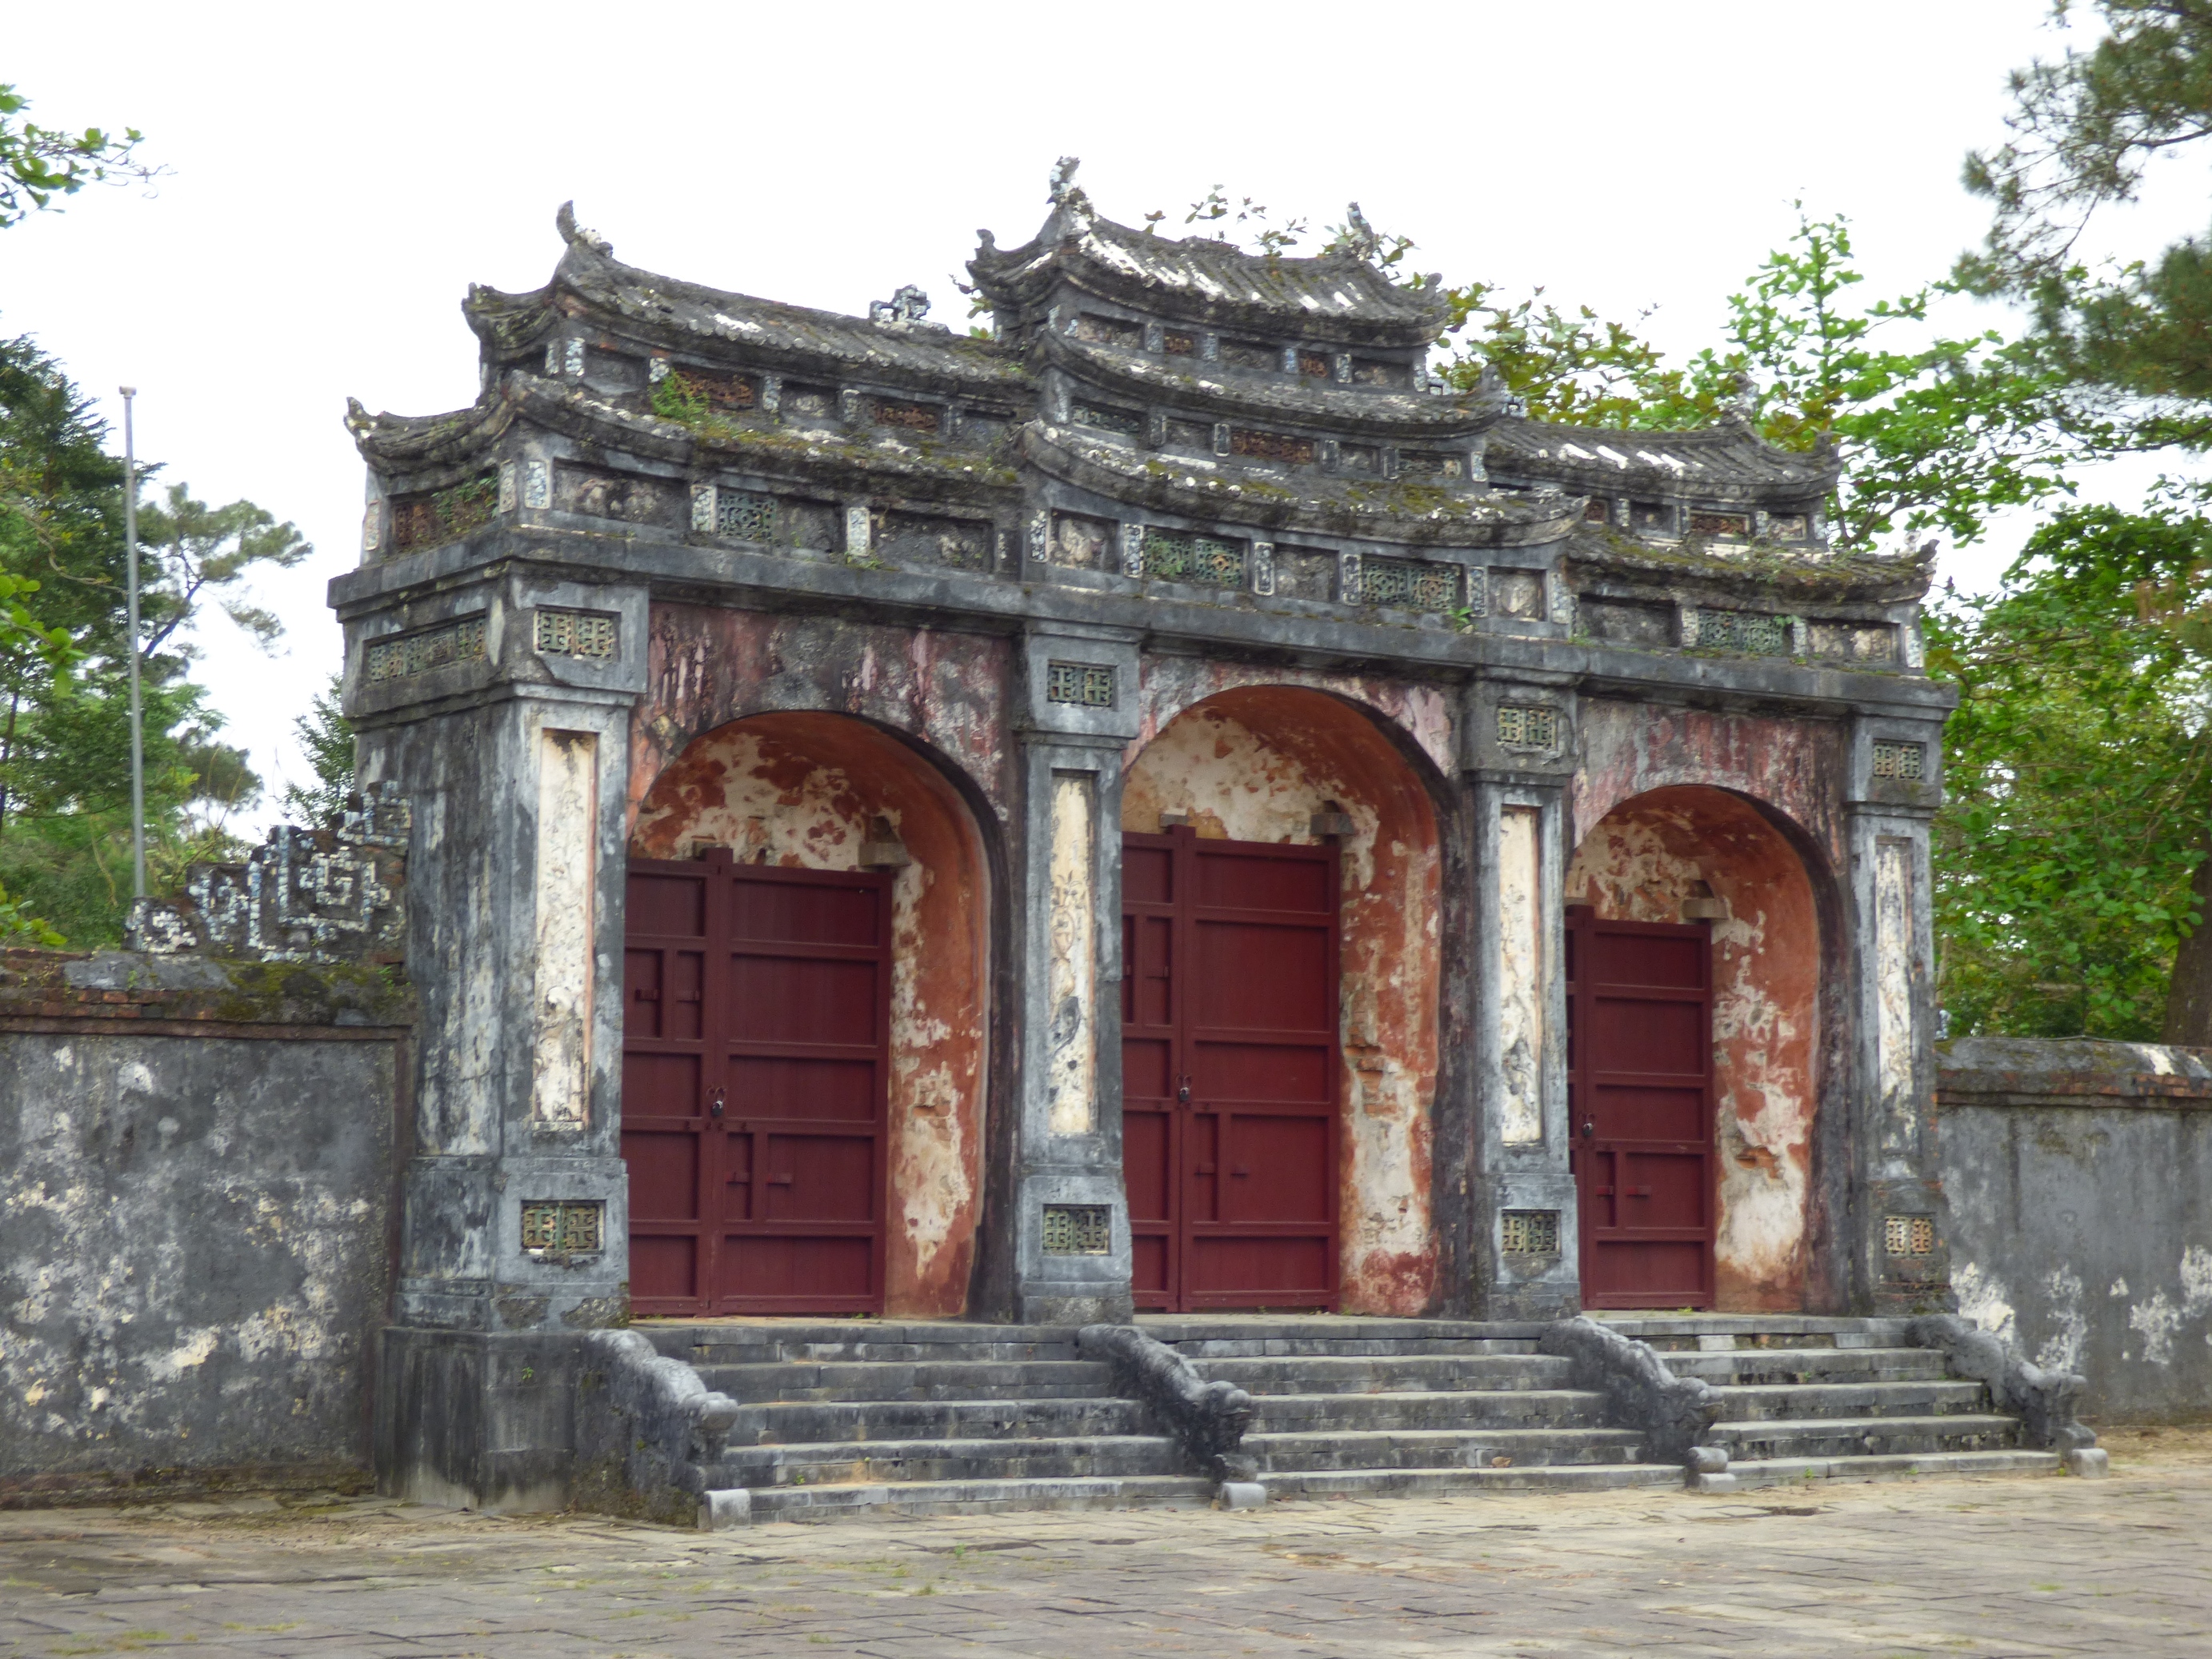 Minh Mang császár sírhelye, amit maga a császár választott ki és kezdte el építtetni 1840-ben.  Nem érte meg az elkészültét, mert 1841-ben meghalt.